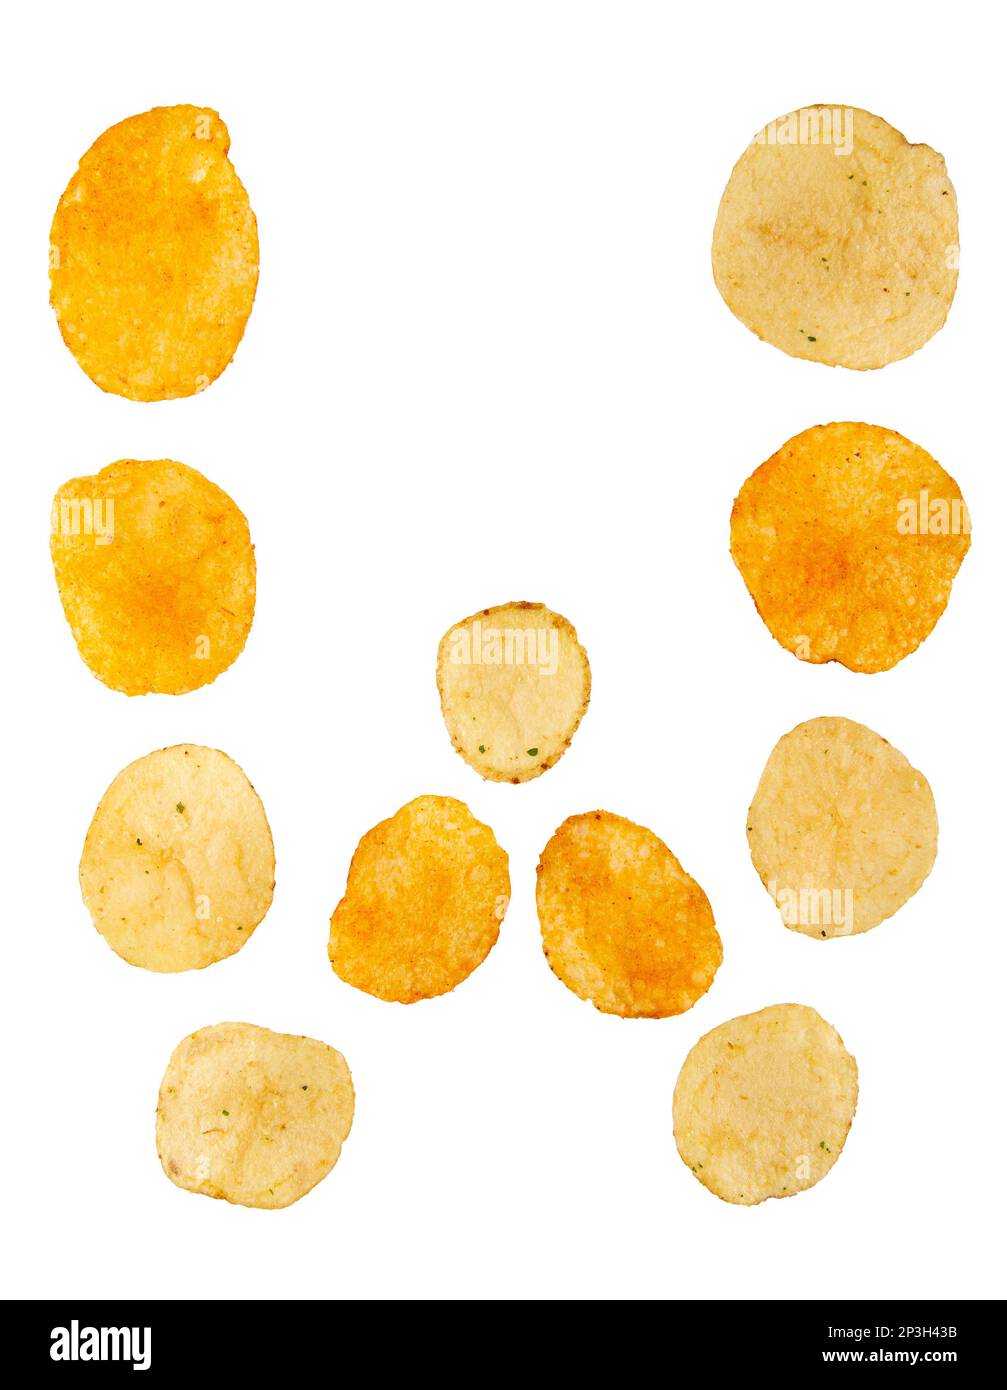 Lettre W faite de chips de pomme de terre et isolée sur fond blanc. Concept de l'alphabet alimentaire. Une lettre de l'ensemble de police de puce de pomme de terre facile à empiler. Banque D'Images